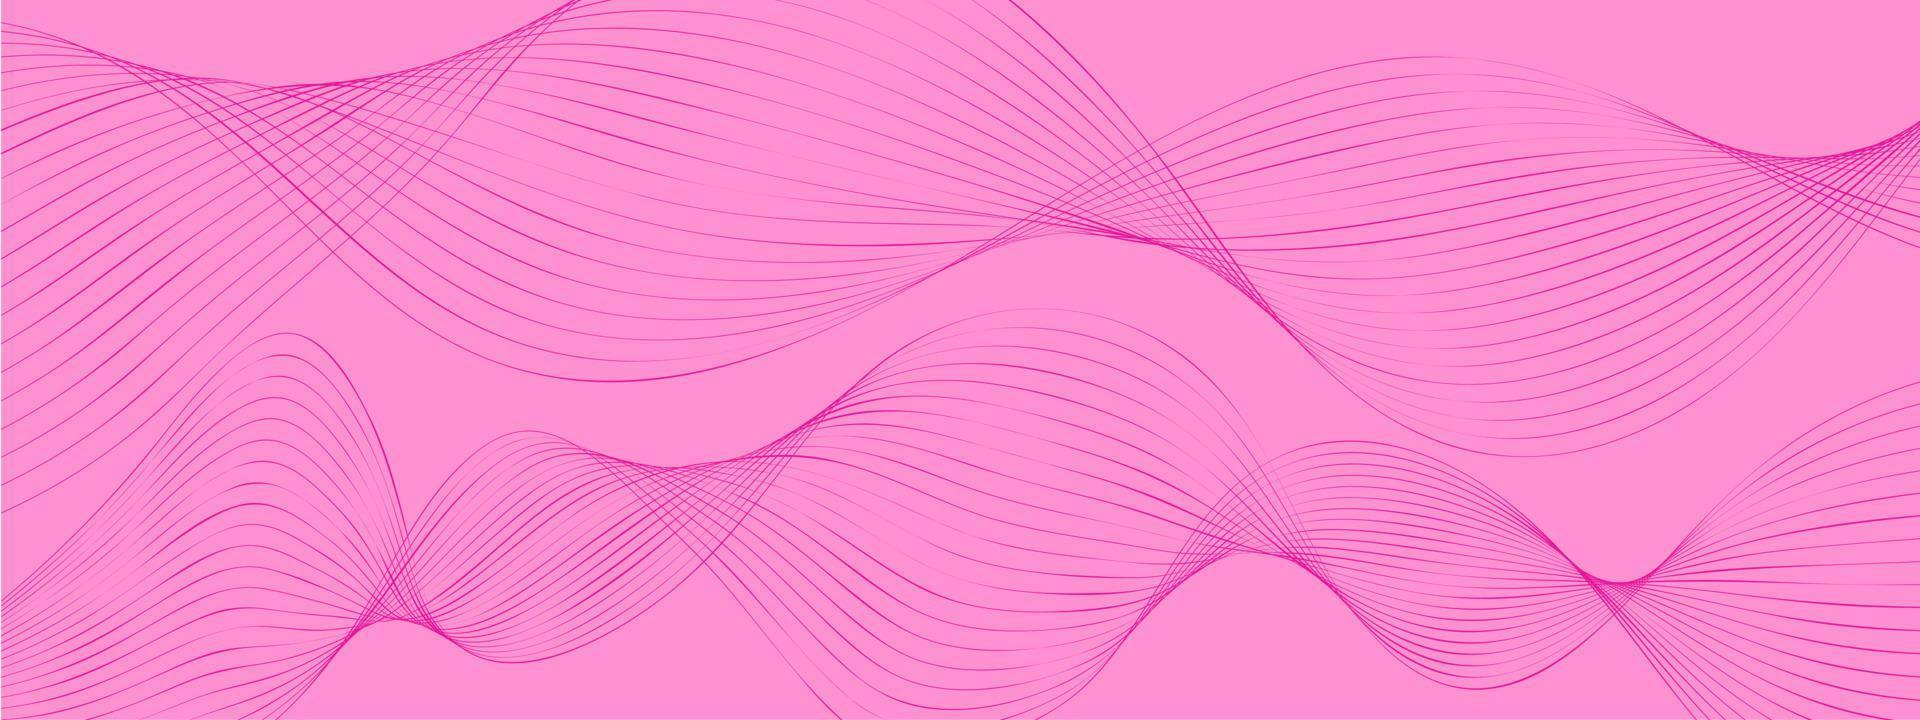 minimal dynamisk rosa lila bakgrund, abstrakt kreativ digitala vågor bakgrund, modern målsida koncept vektor. ljusa släta vågor för broschyr, hemsida, flyer design, banner. vektor